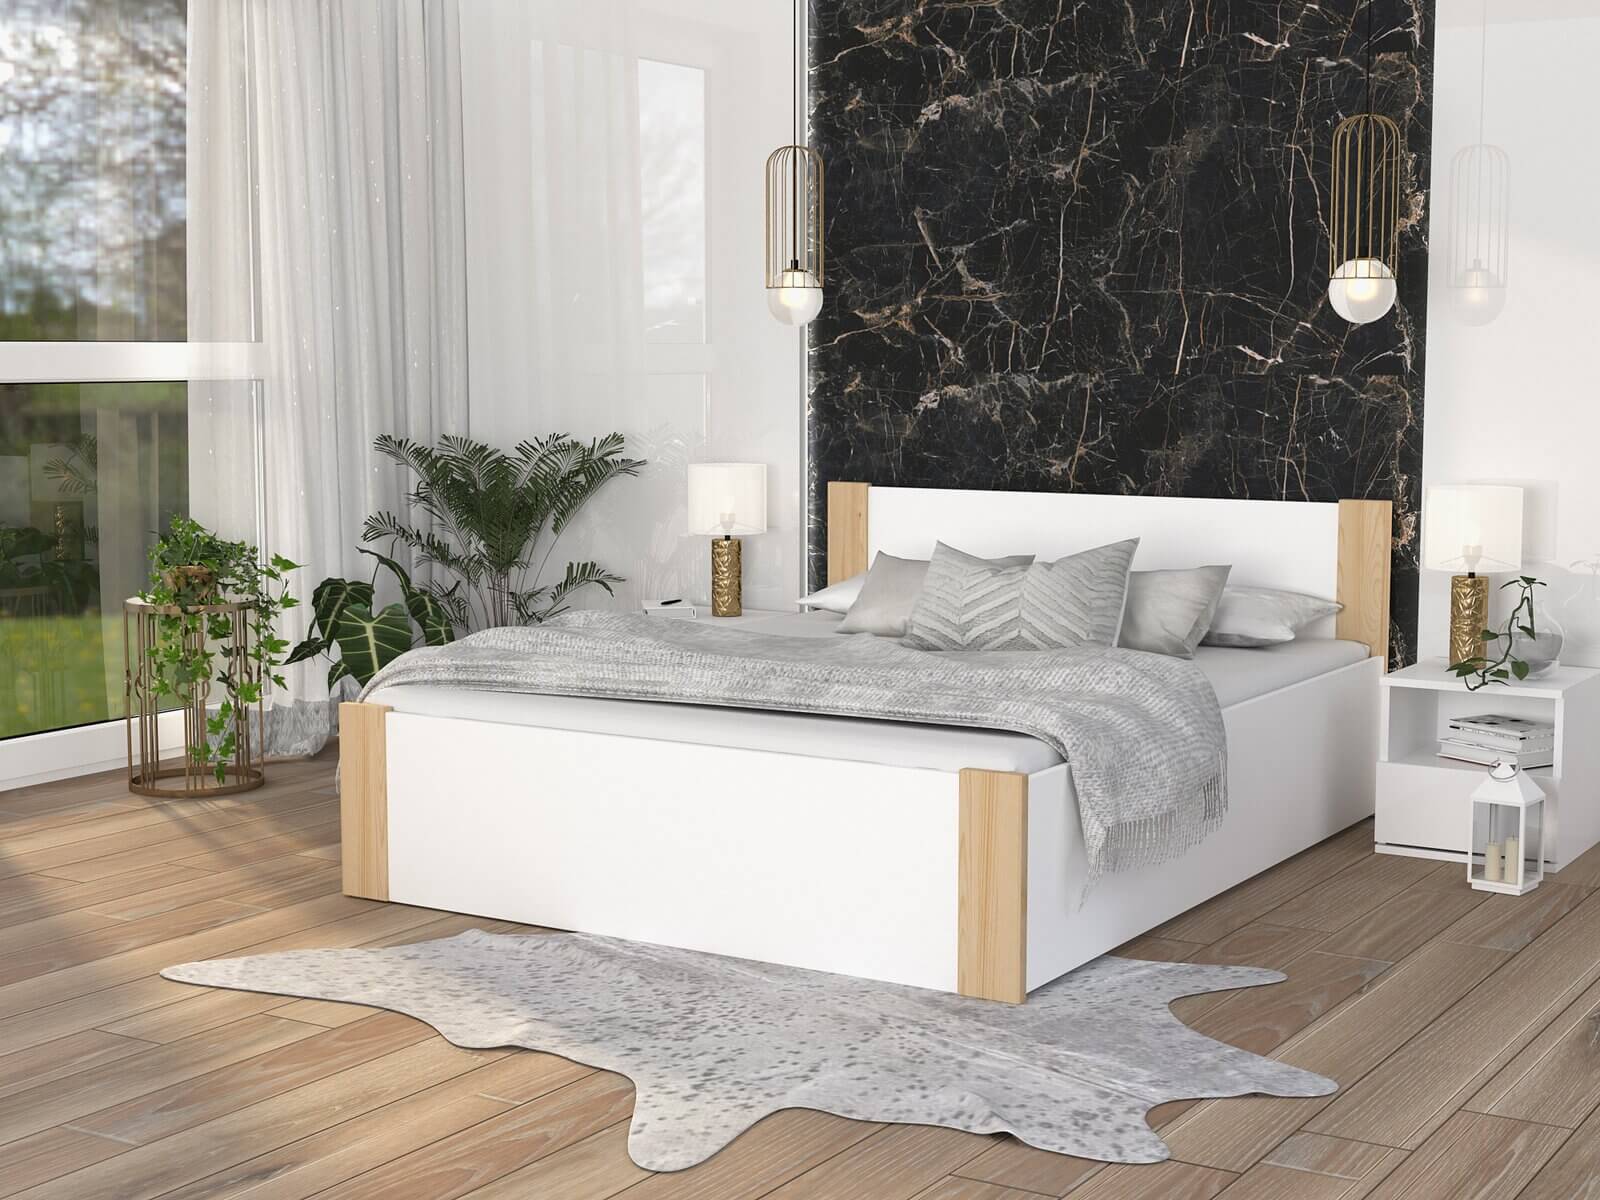 Giường ngủ gỗ công nghiệp màu trắng với thiết kế hiện đại  